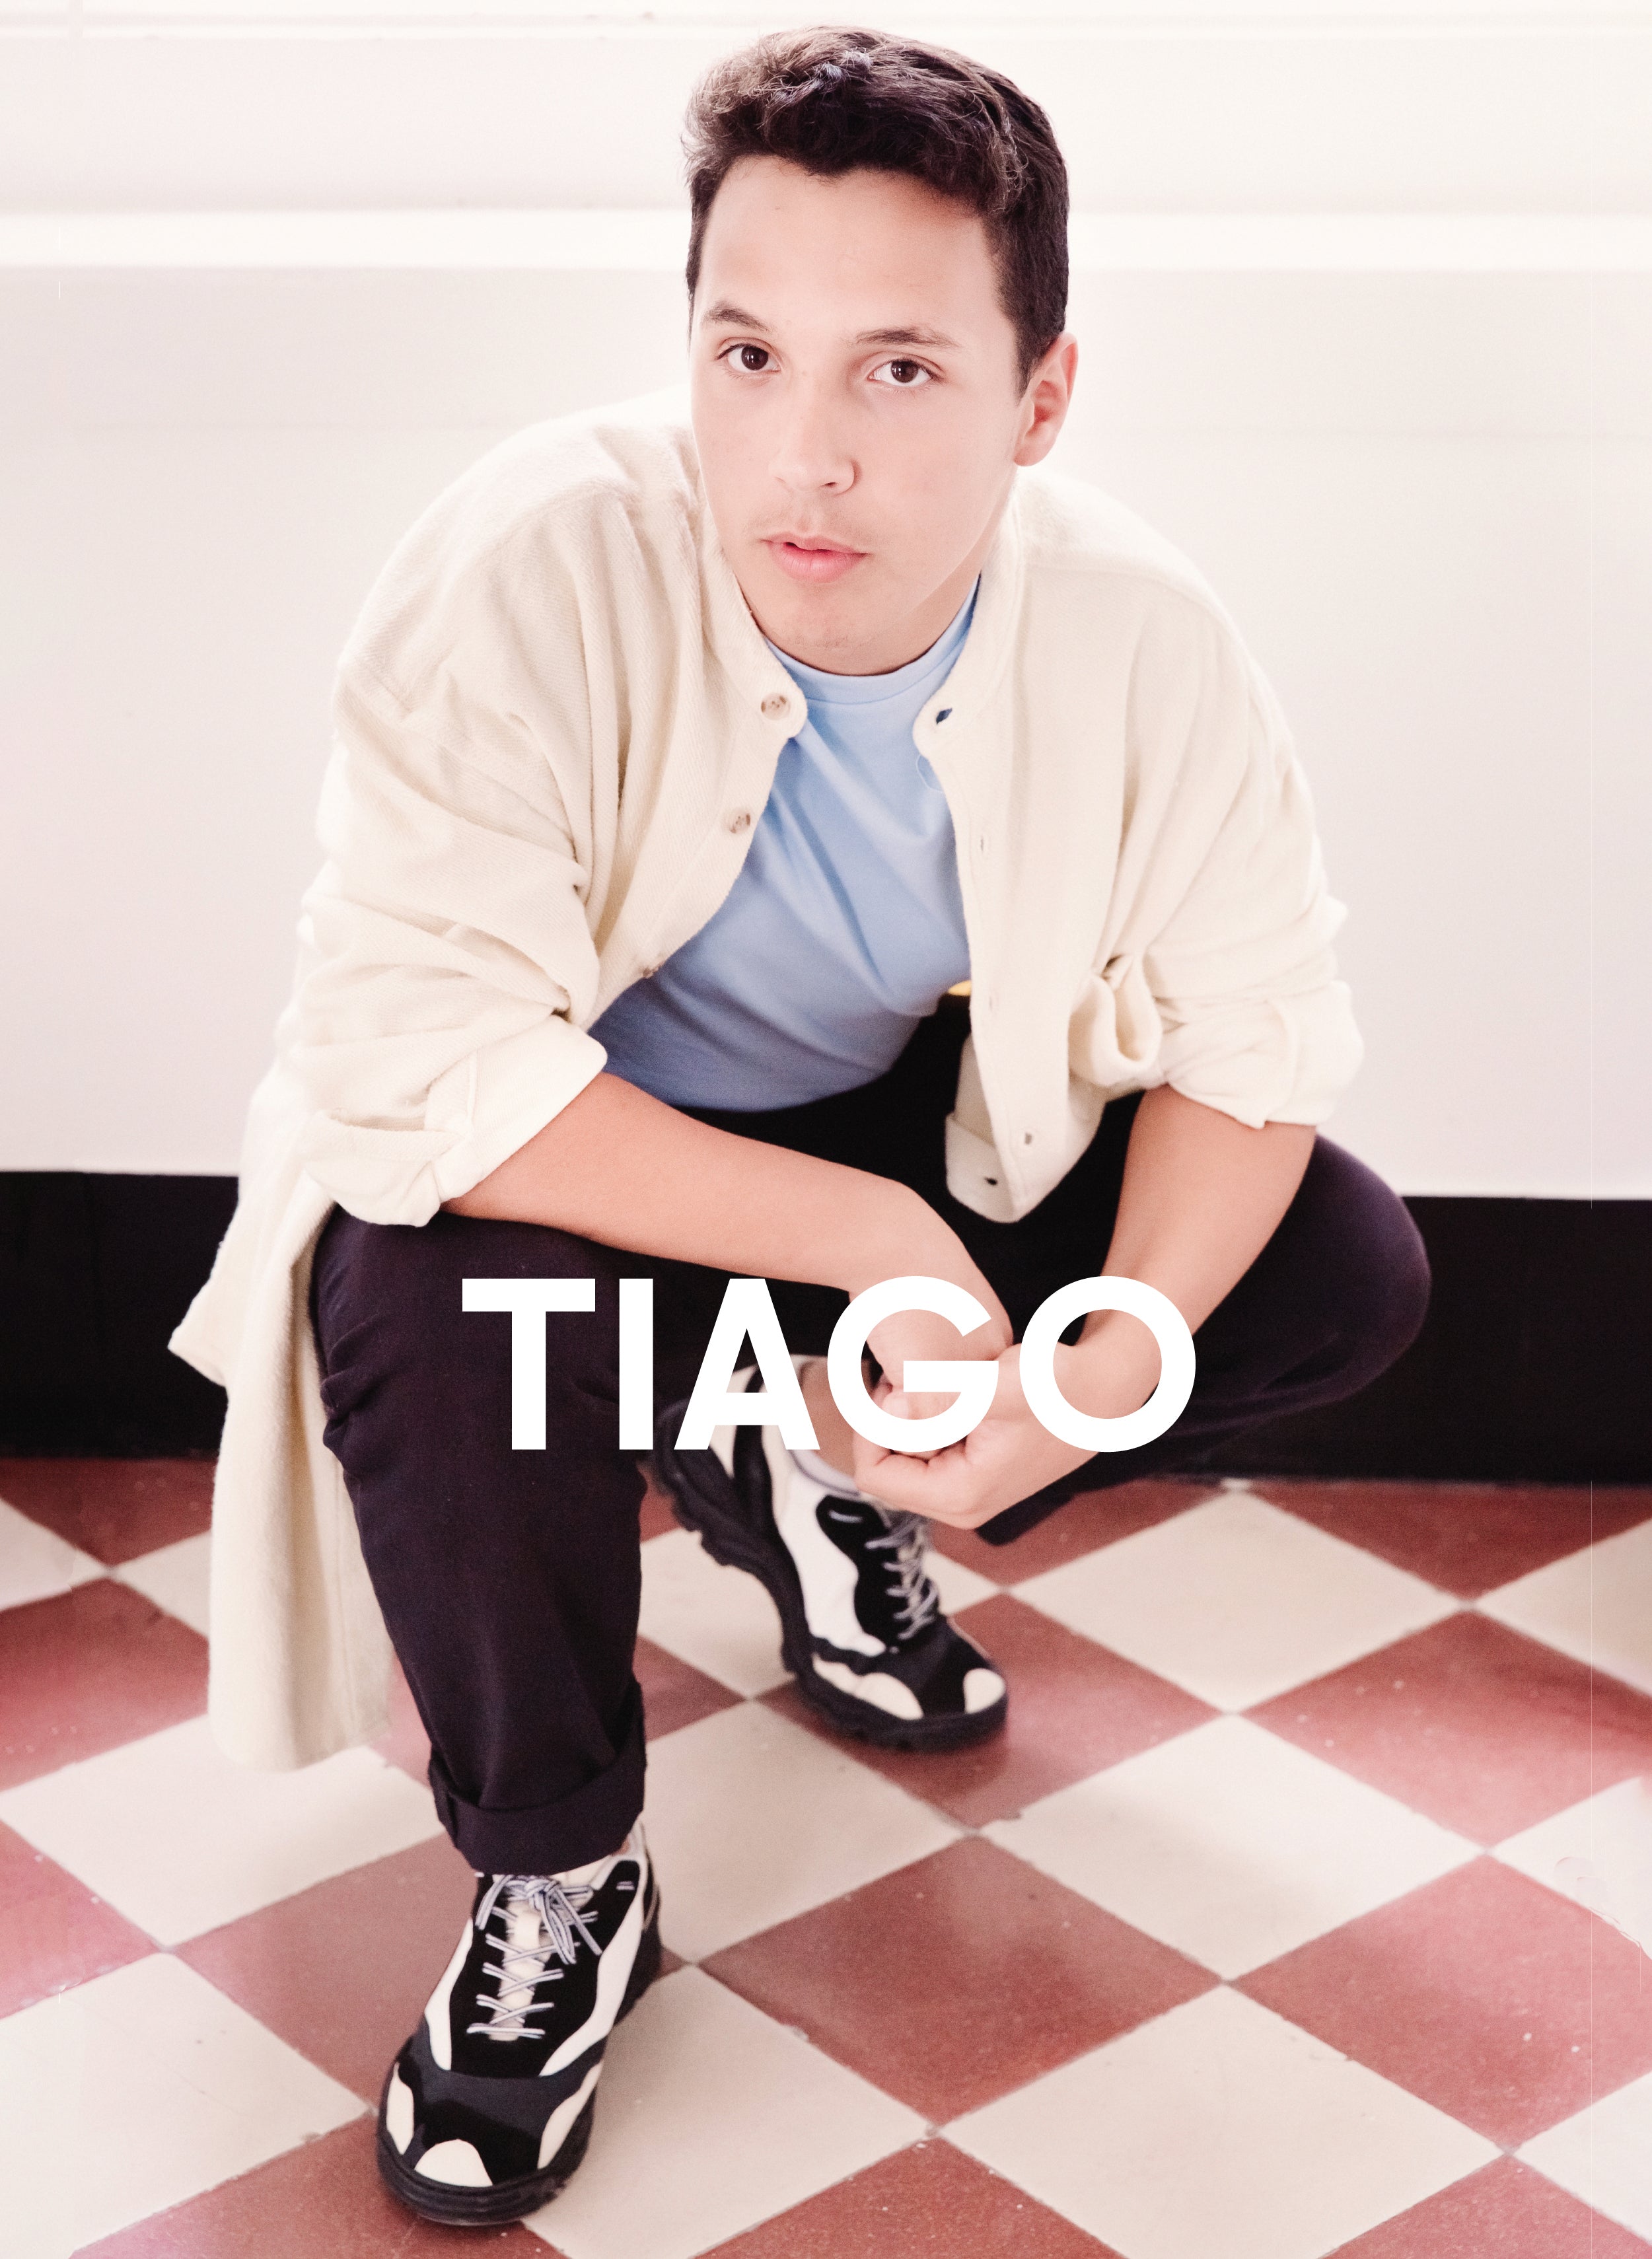 Tiago en chemise bleue et noire Diverge sneakers Promouvoir l’impact social et les chaussures personnalisées à travers le projet Imagine.